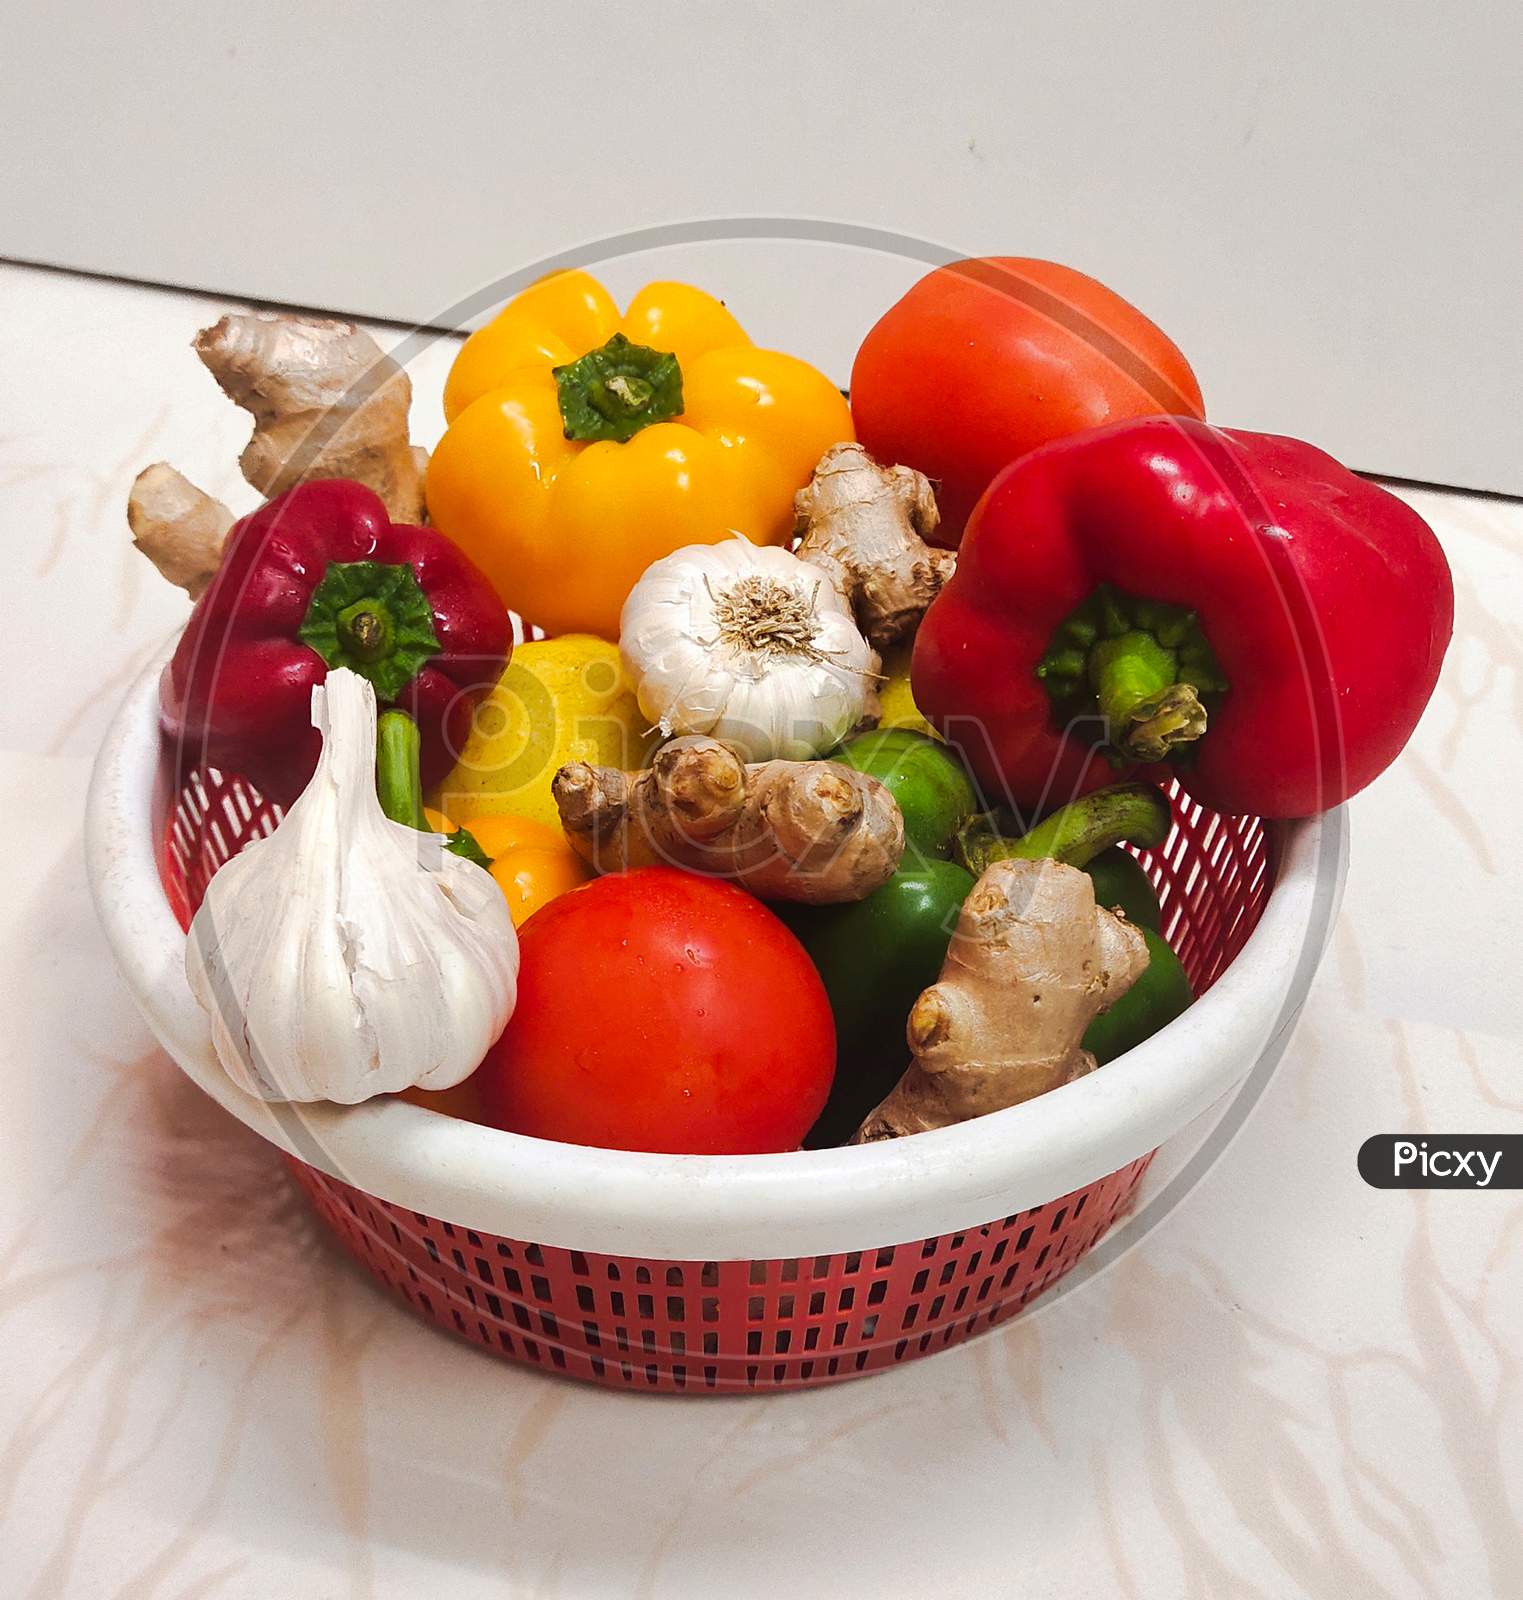 Vegetables Basket